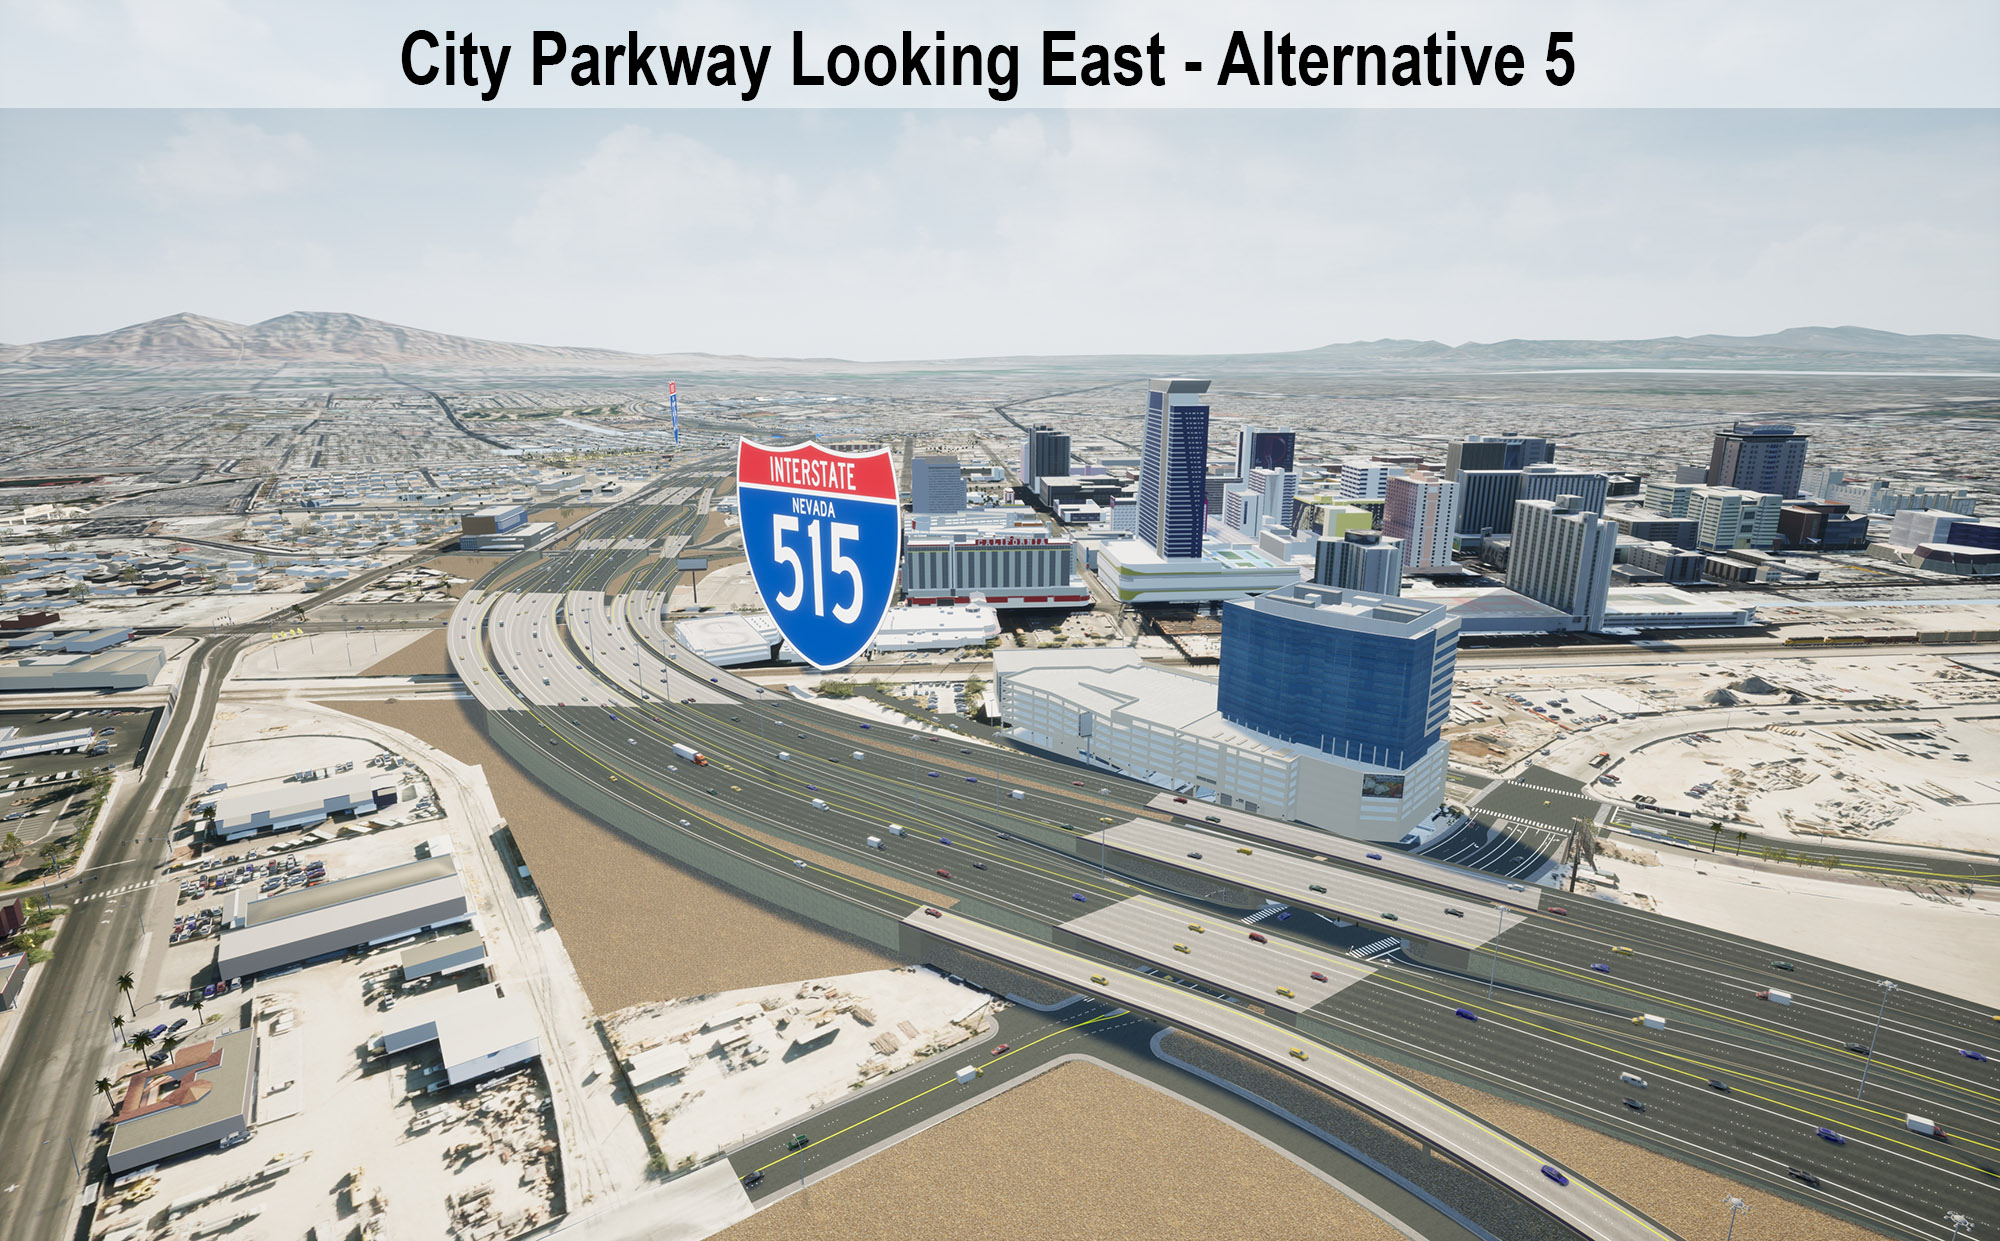 City Parkway Looking East - Alternative 5